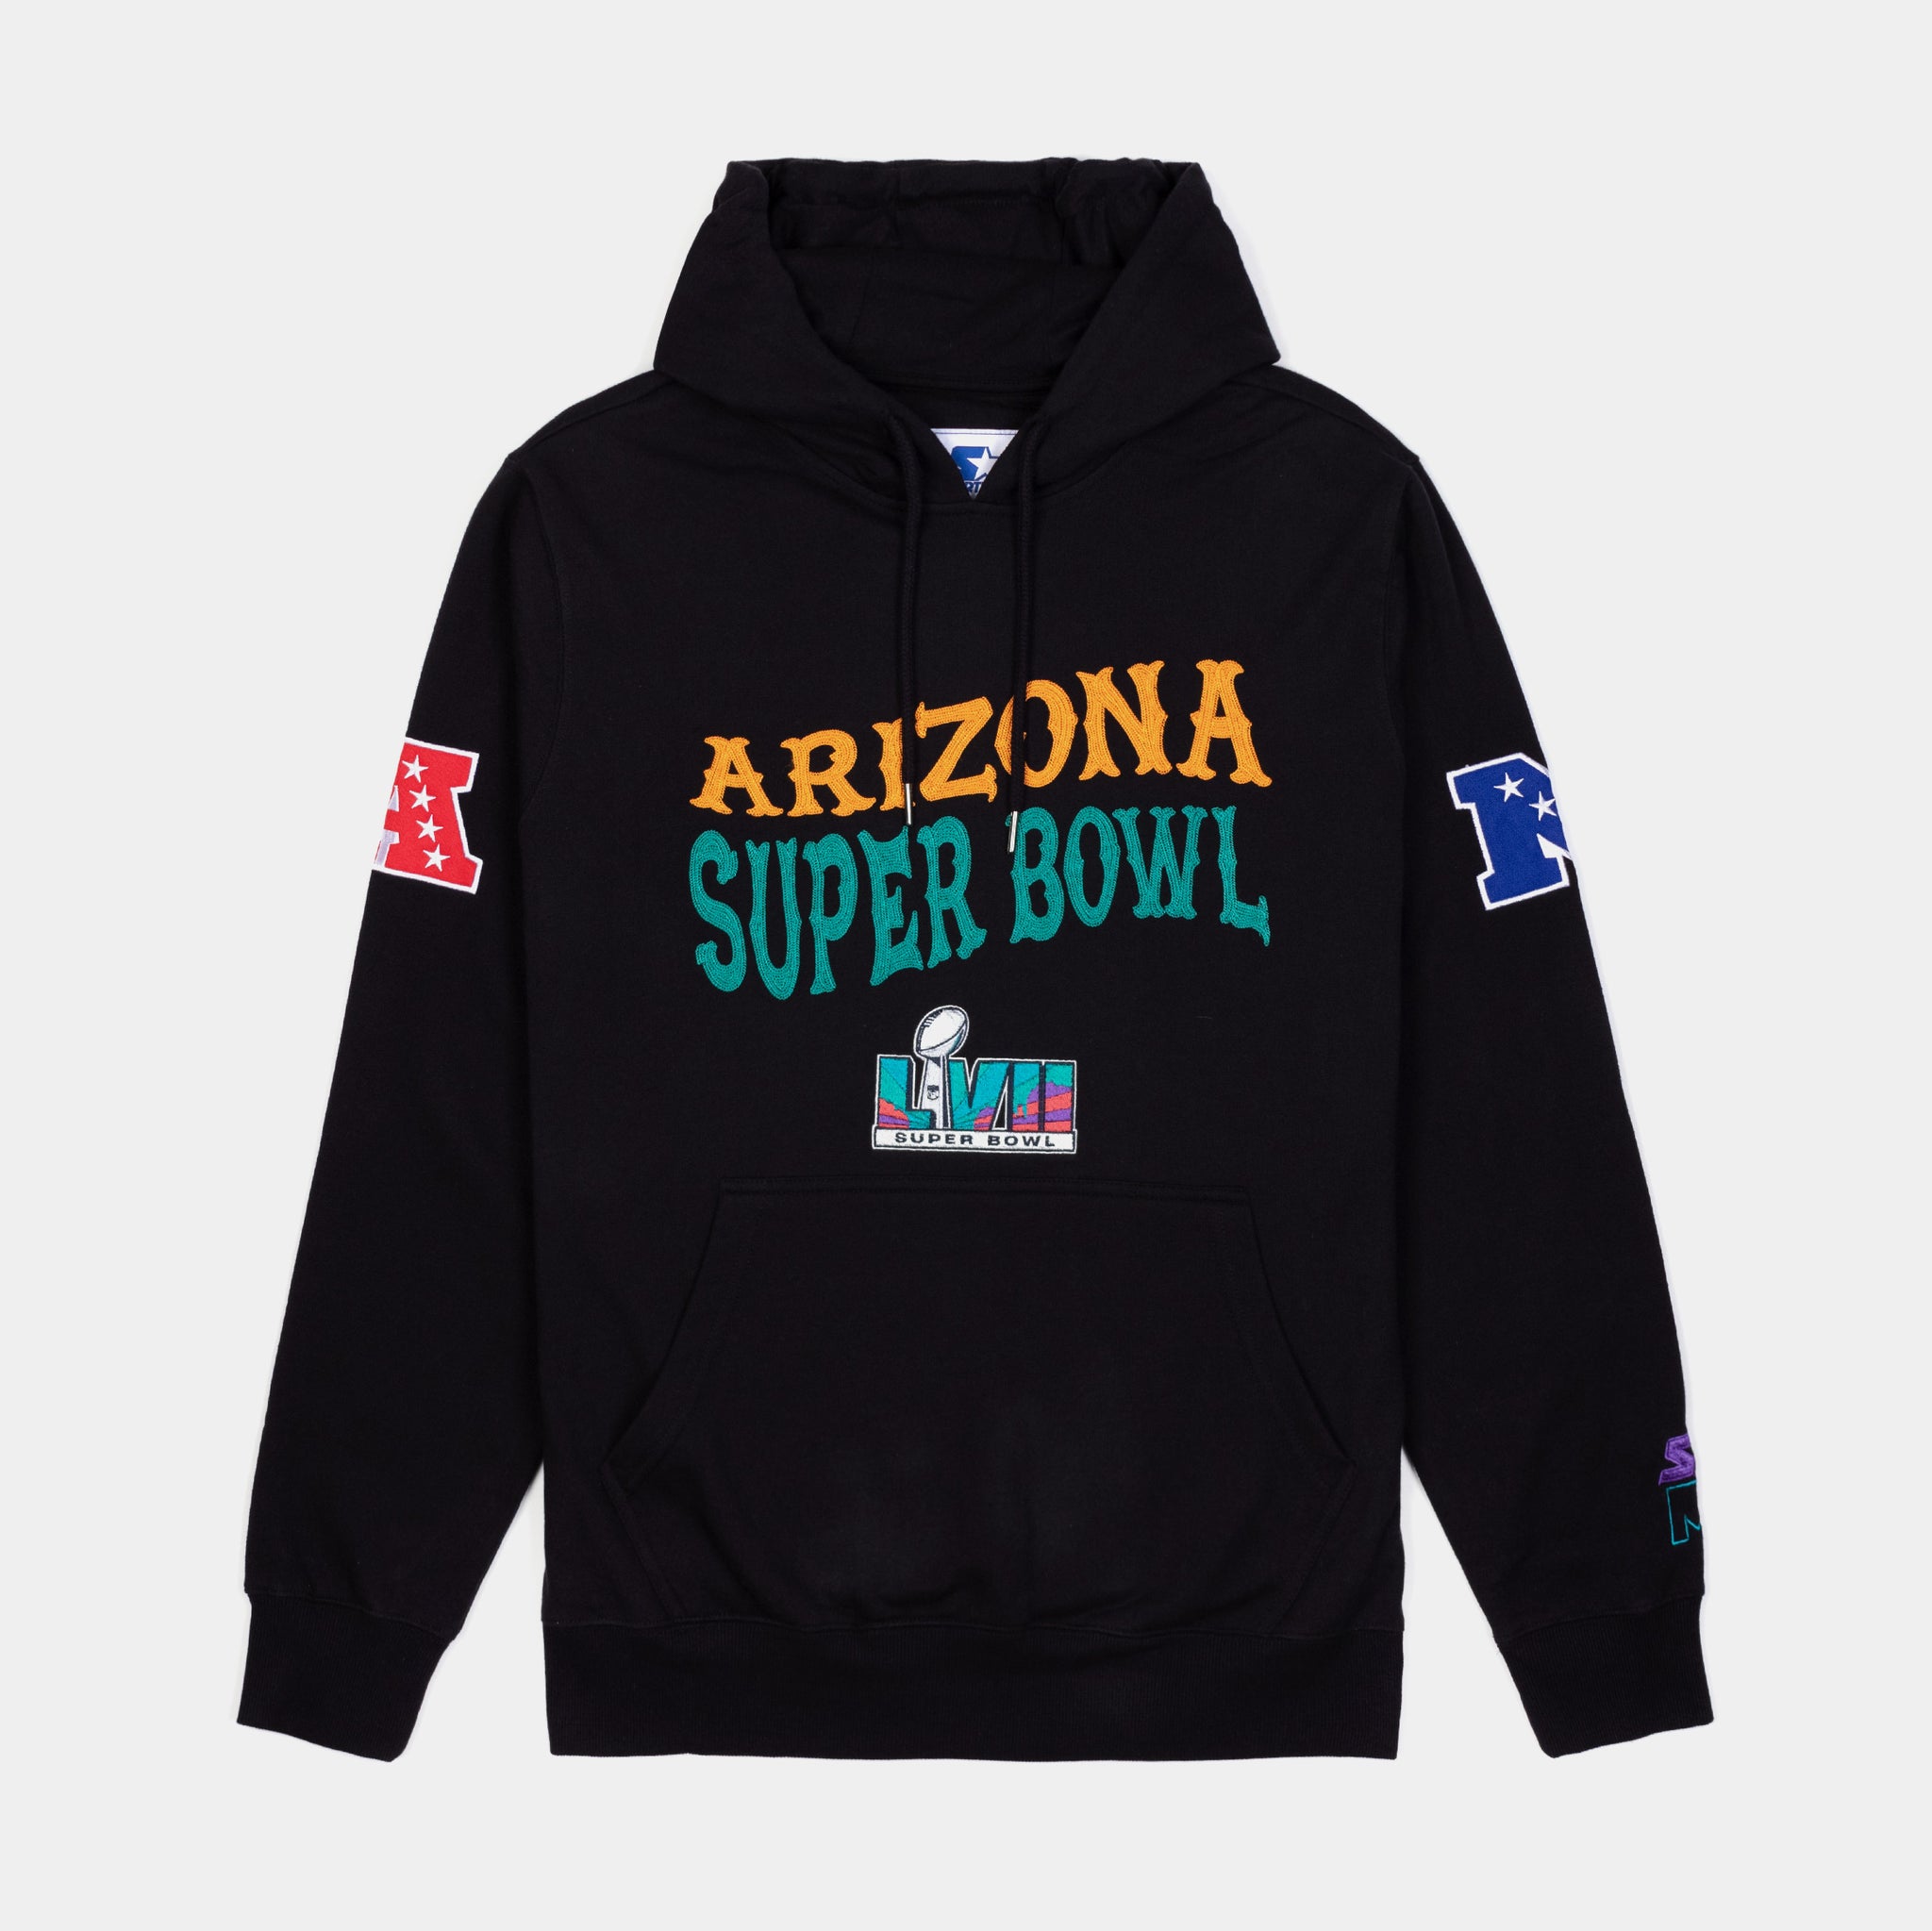 super bowl lvii hoodie